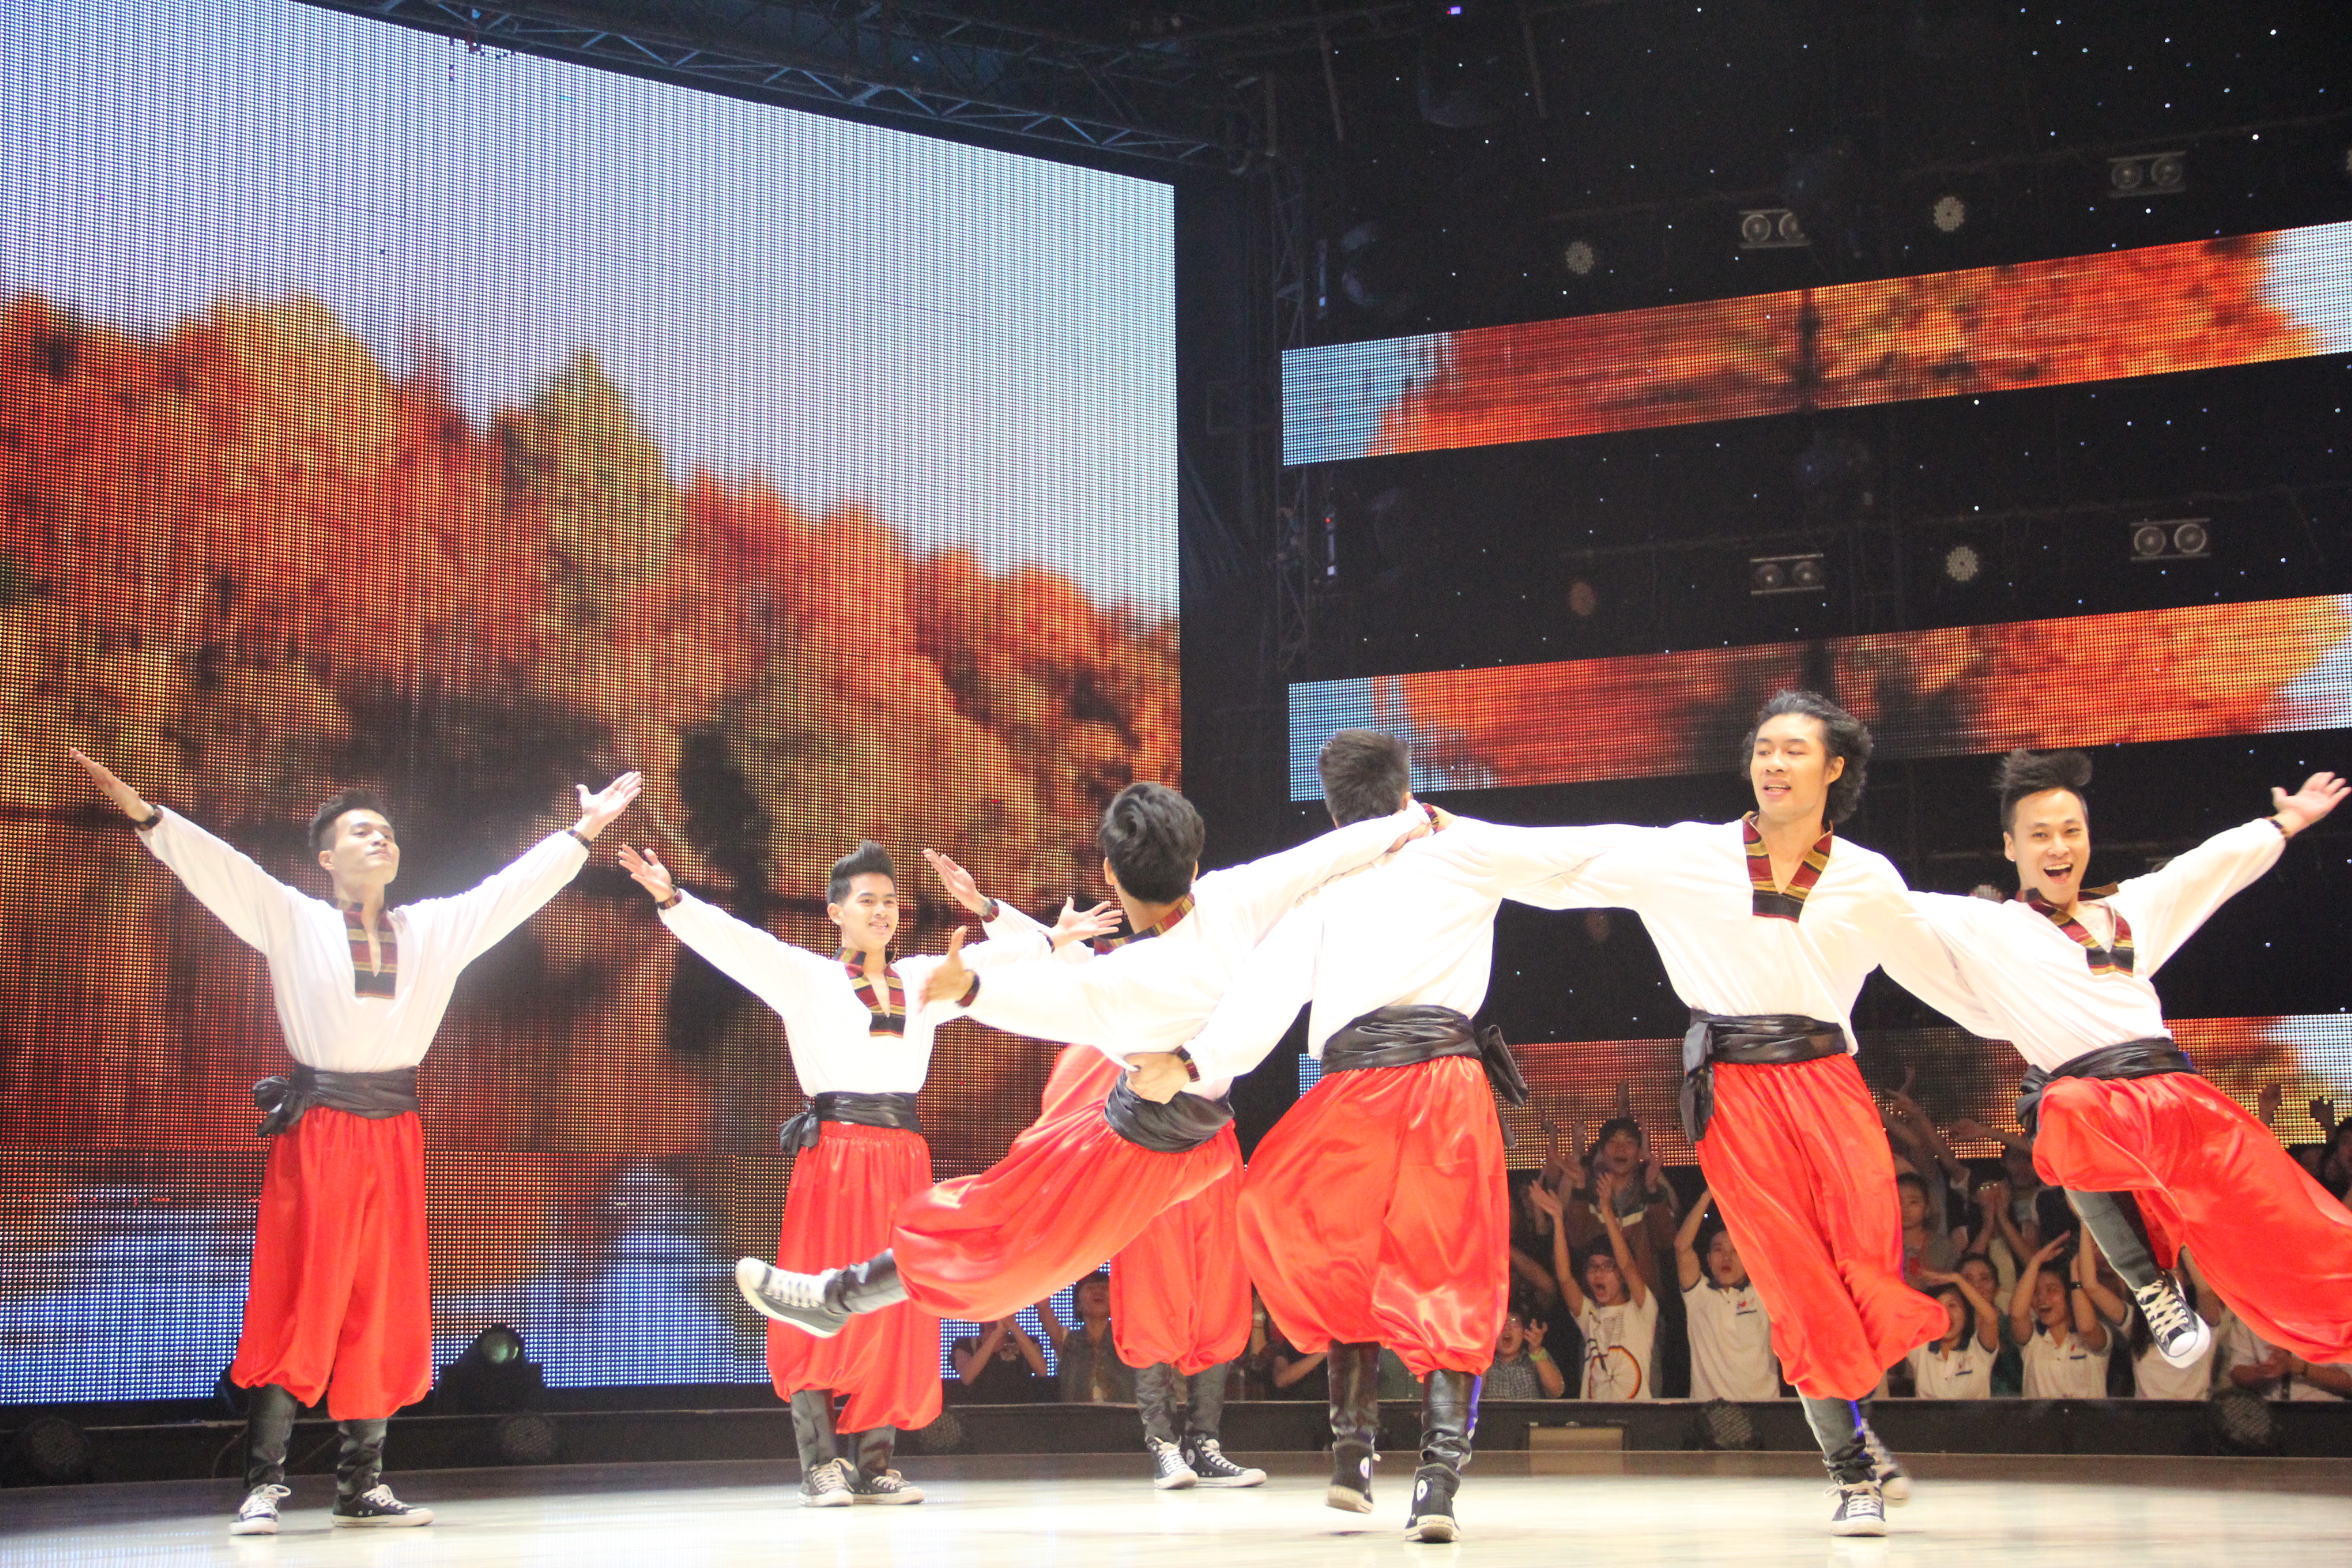 
	Nhóm S.I.N.E với vũ điệu dân gian Nga sôi động